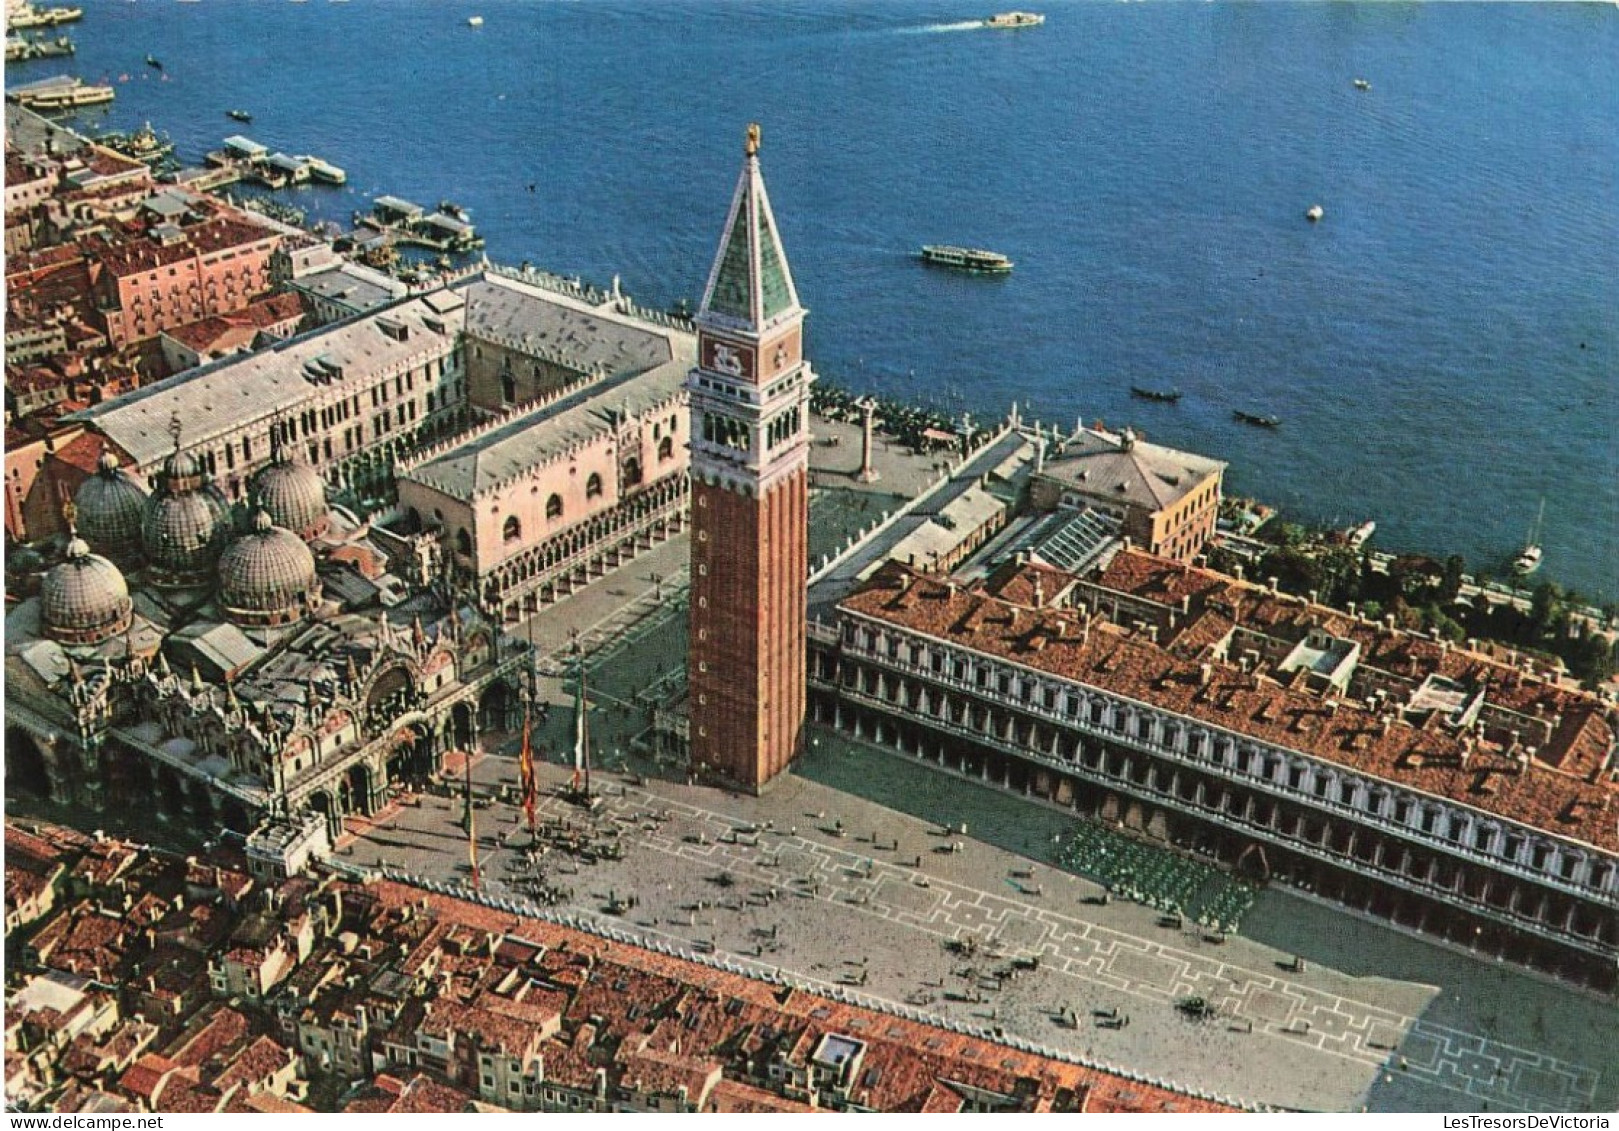 ITALIE - Venezia - Vue Aérienne De La Place Saint Marc - Colorisé - Carte Postale - Venetië (Venice)